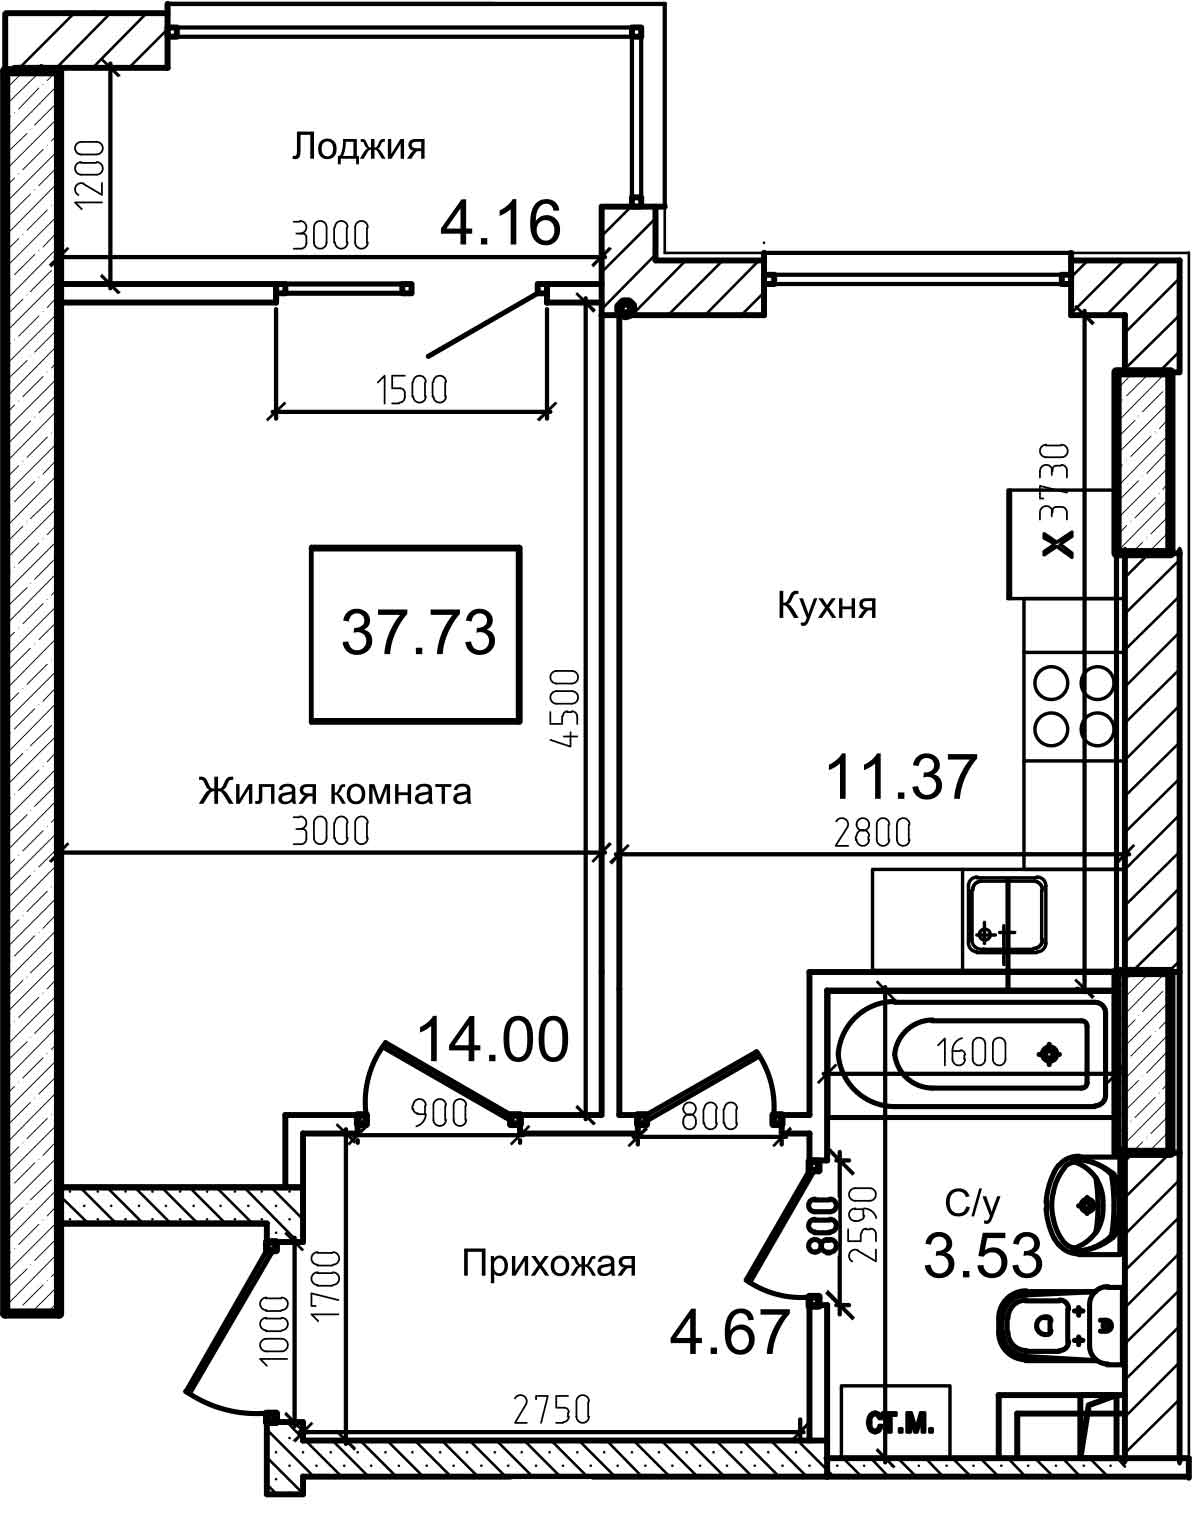 Планування 1-к квартира площею 37.6м2, AB-08-04/00011.